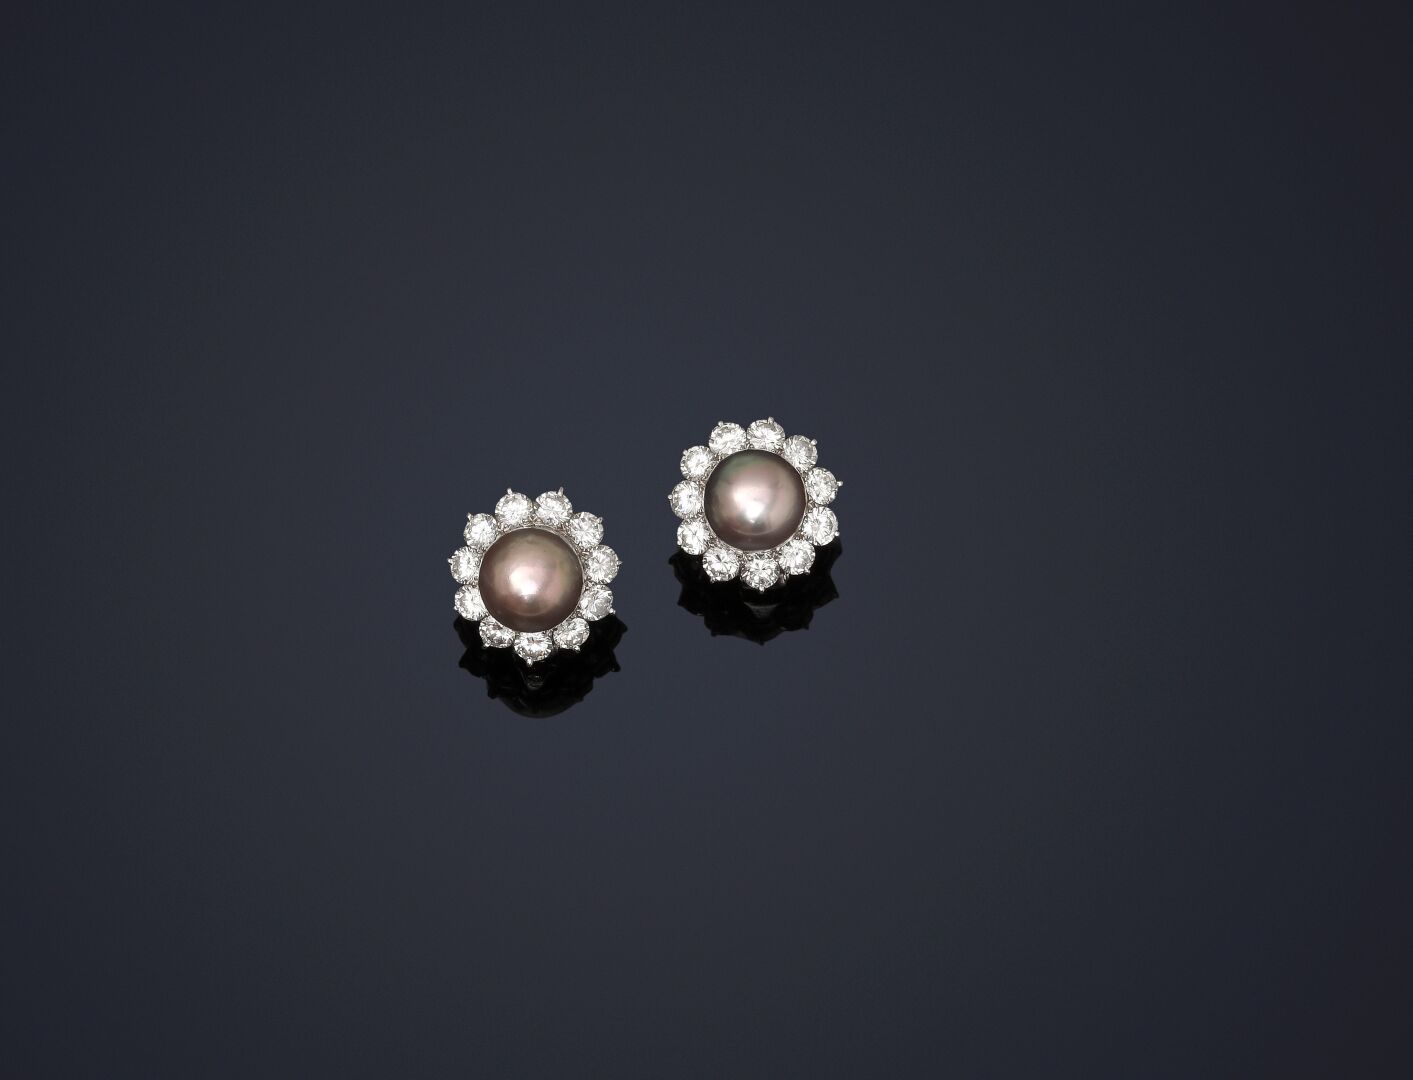 Null 一对镶有钻石的灰色珍珠的耳夹。
白金镶嵌。
法国制造（RS未鉴定）。
重量：10.5克 - ø珍珠：9.3和9.4毫米
附有LFG的证书，上面写着：
&hellip;